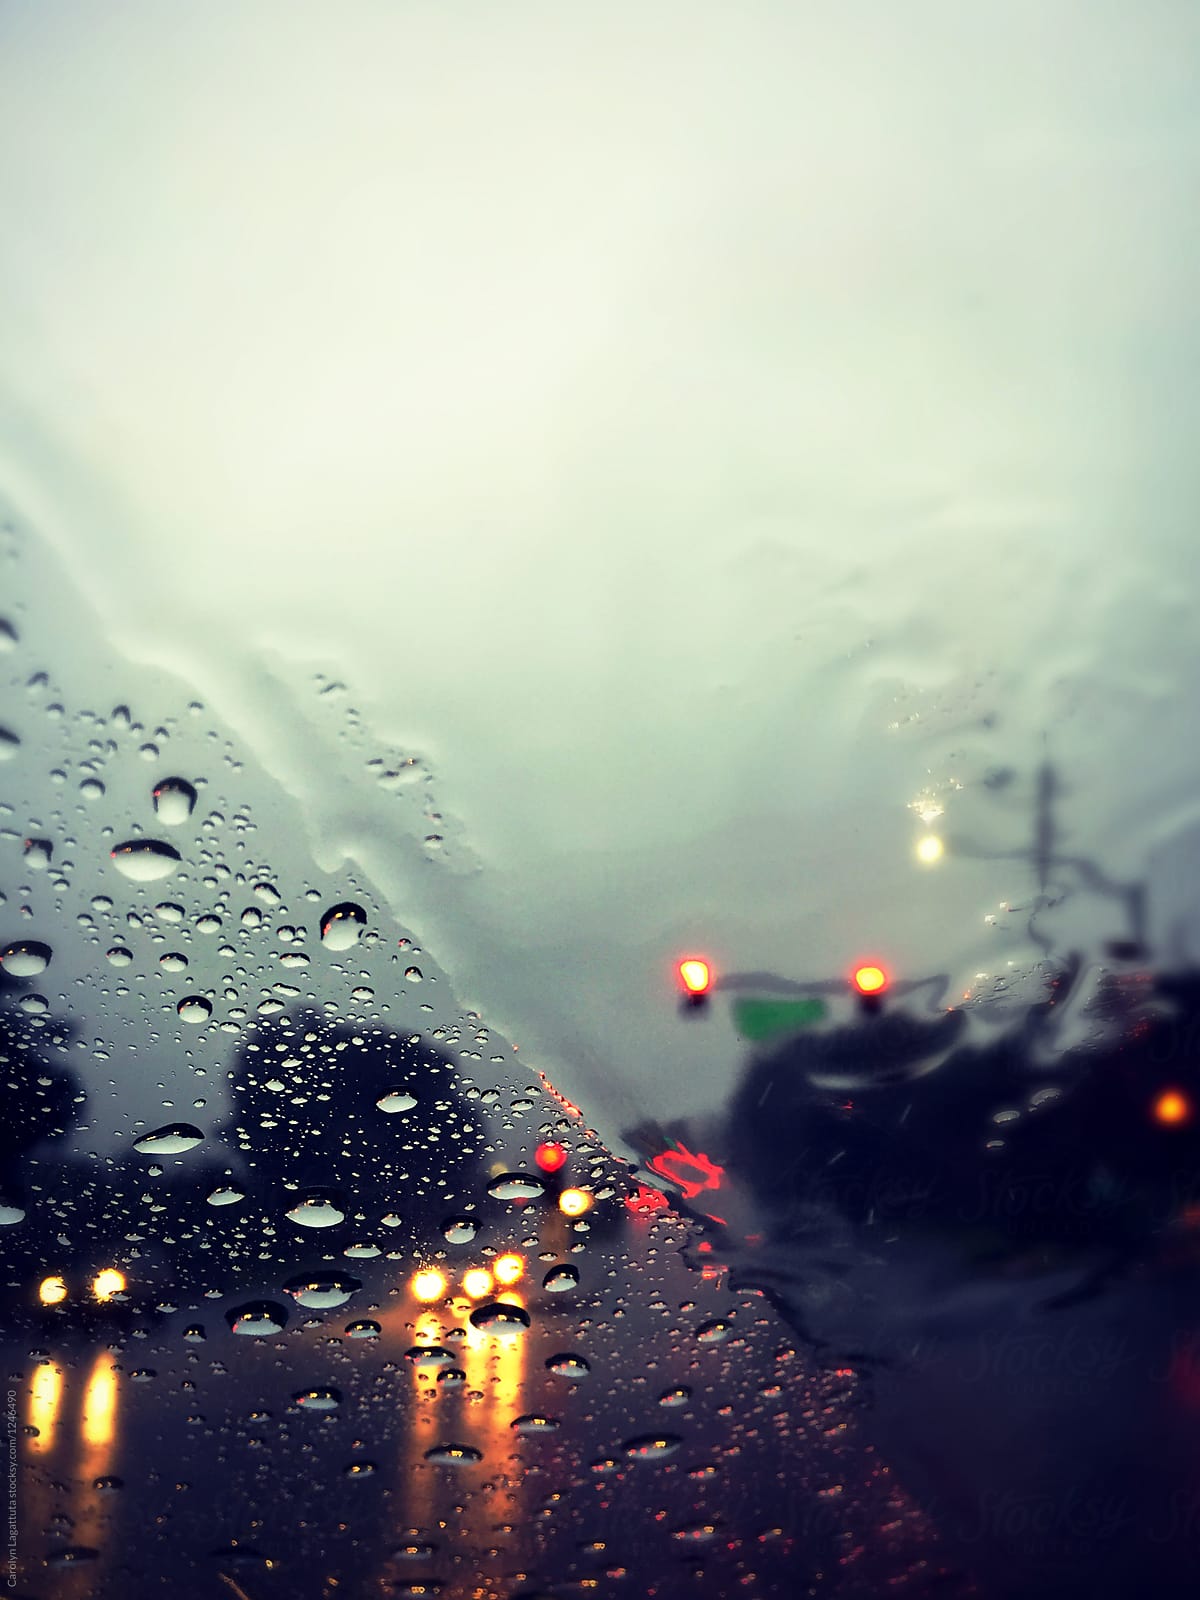 Heavy rain as seen through the windshield